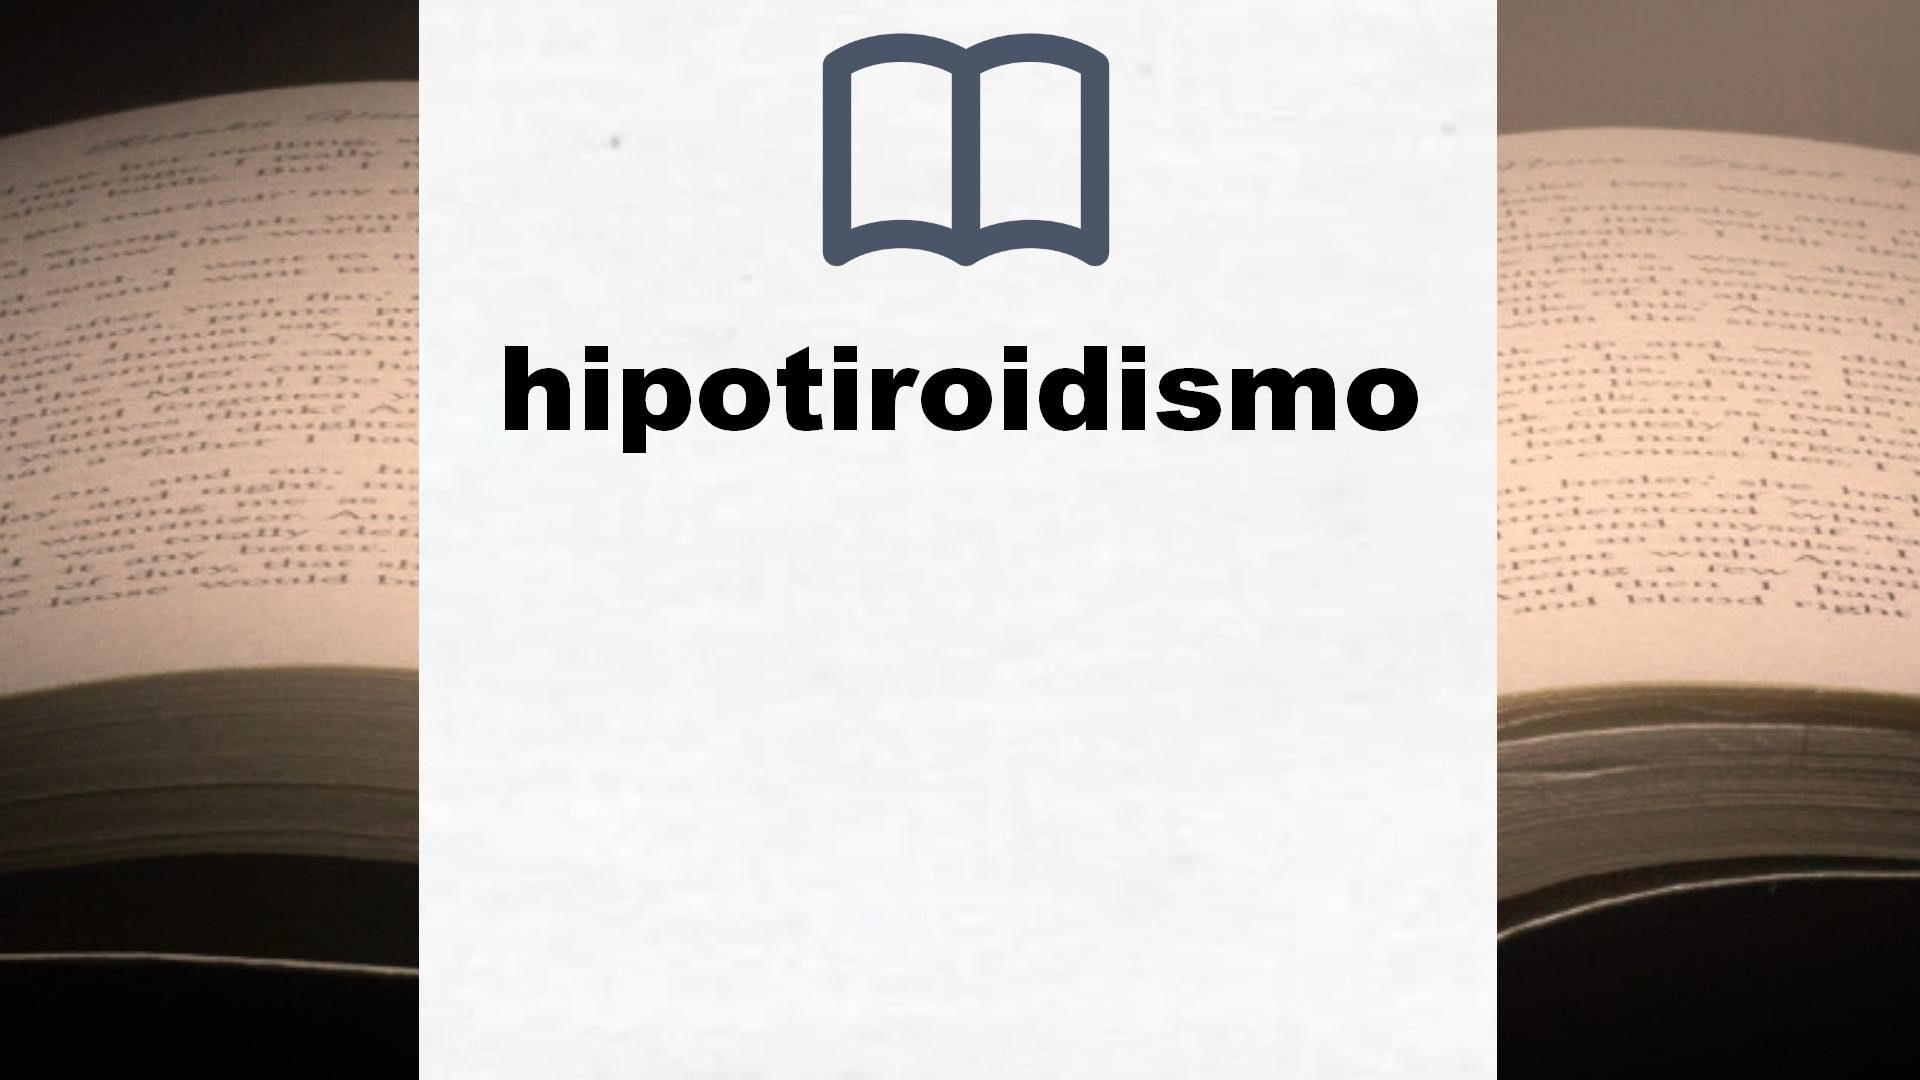 Libros sobre hipotiroidismo